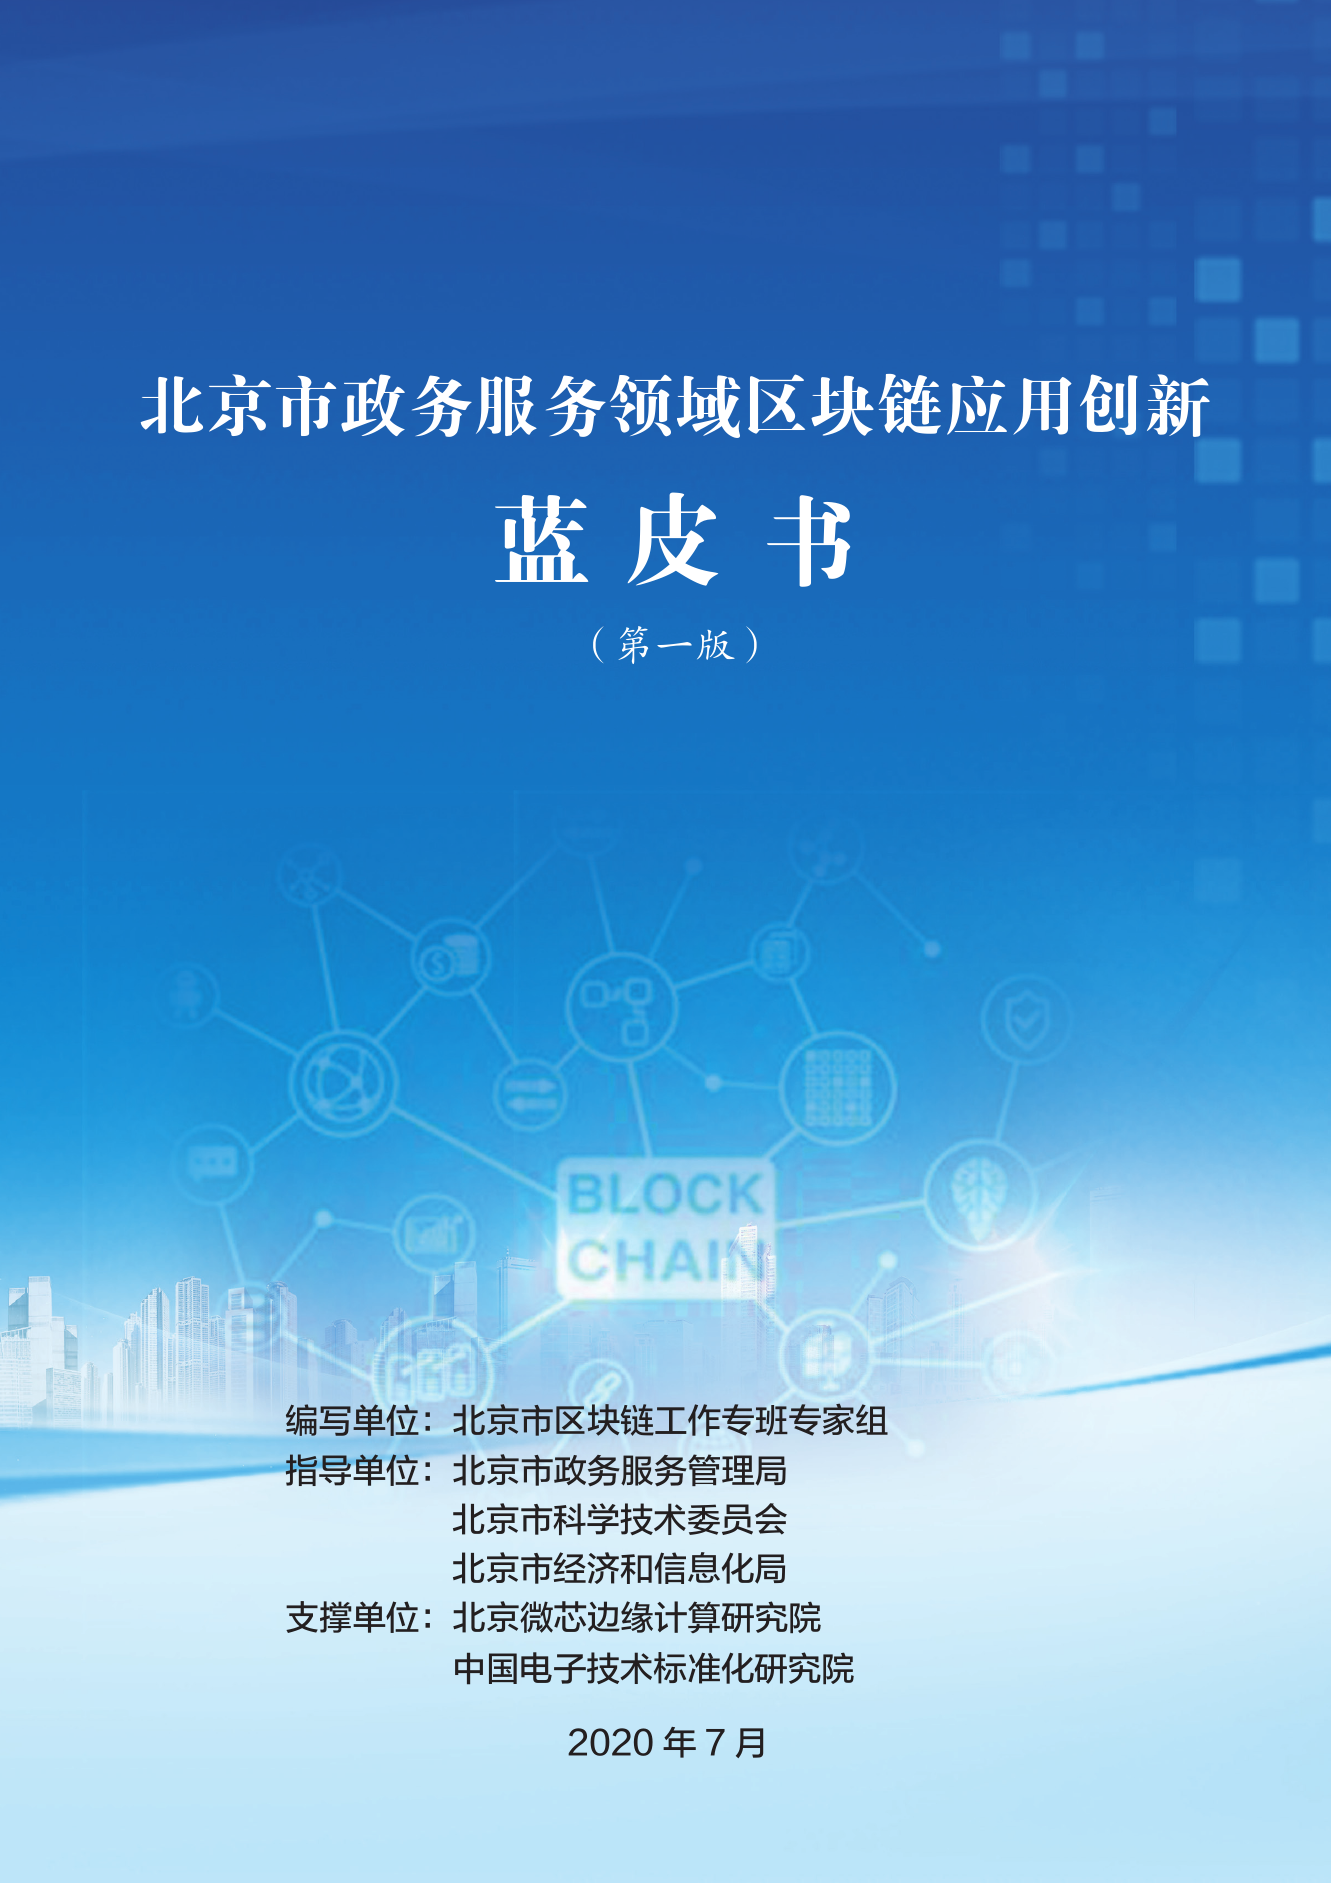 北京发布政务服务领域区块链应用创新蓝皮书